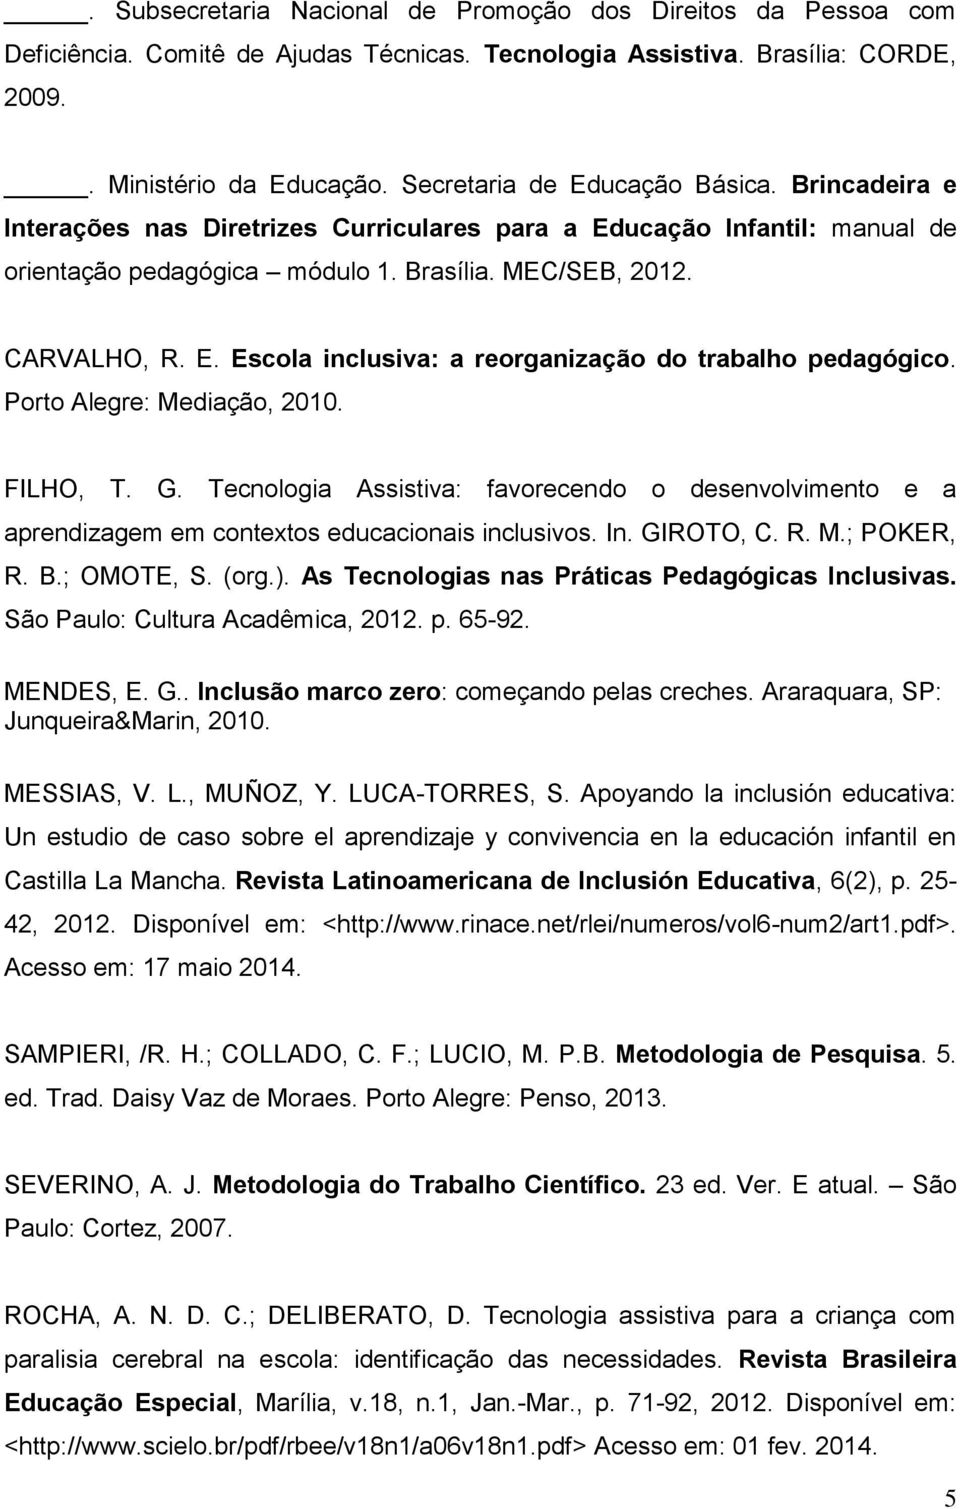 Porto Alegre: Mediação, 2010. FILHO, T. G. Tecnologia Assistiva: favorecendo o desenvolvimento e a aprendizagem em contextos educacionais inclusivos. In. GIROTO, C. R. M.; POKER, R. B.; OMOTE, S.